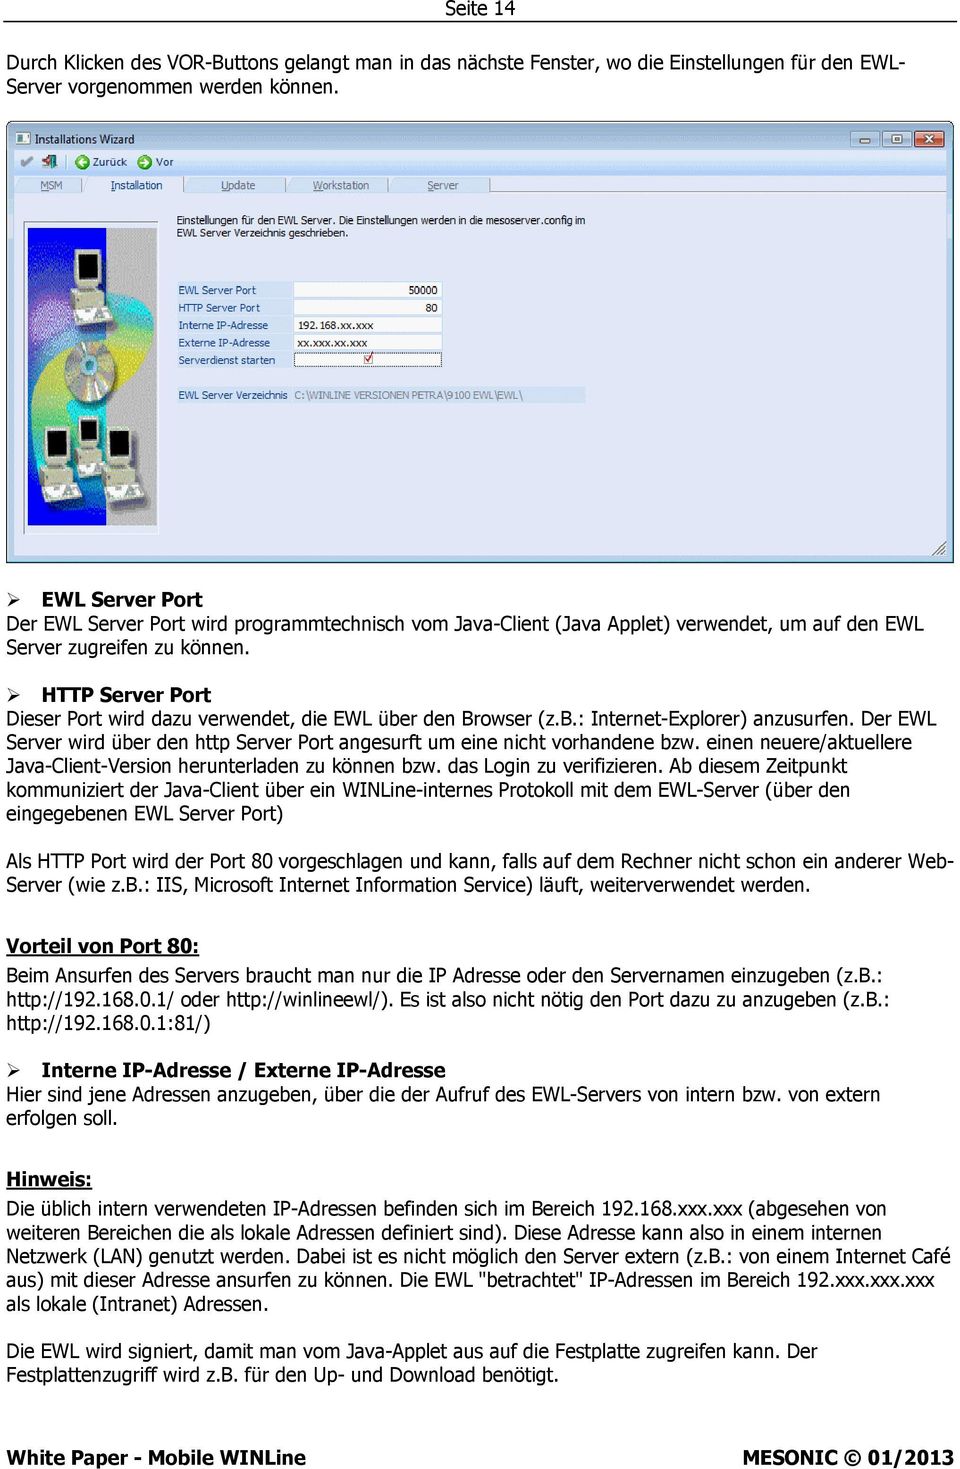 HTTP Server Port Dieser Port wird dazu verwendet, die EWL über den Browser (z.b.: Internet-Explorer) anzusurfen. Der EWL Server wird über den http Server Port angesurft um eine nicht vorhandene bzw.